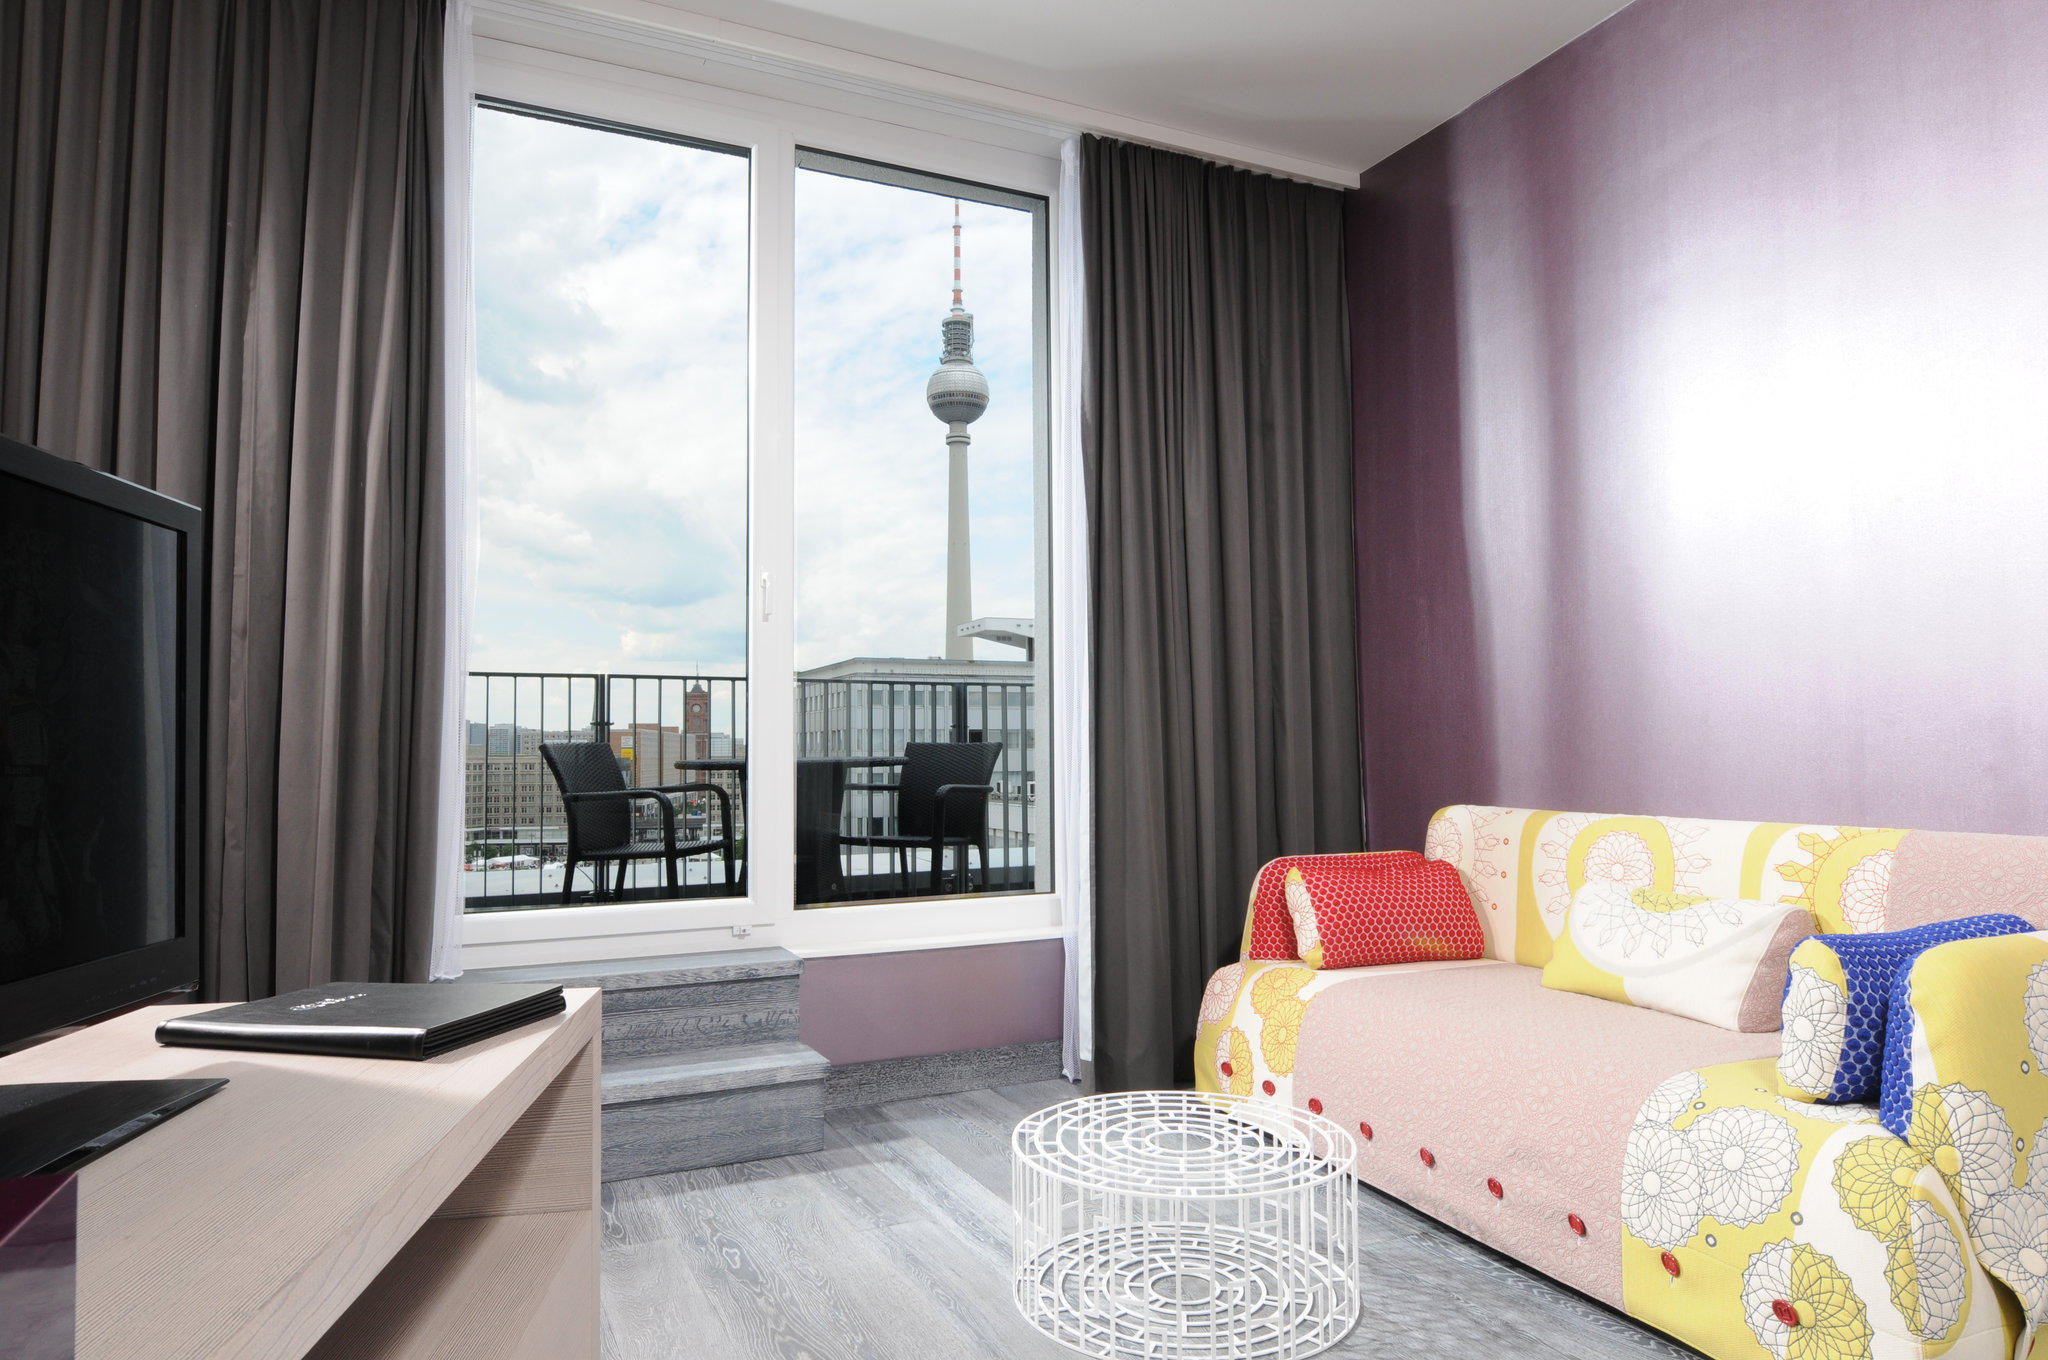 Hotel Indigo Berlin - Centre Alexanderplatz, an IHG Hotel - CLOSED, Bernhard - Weiss - Strasse 5 in Berlin